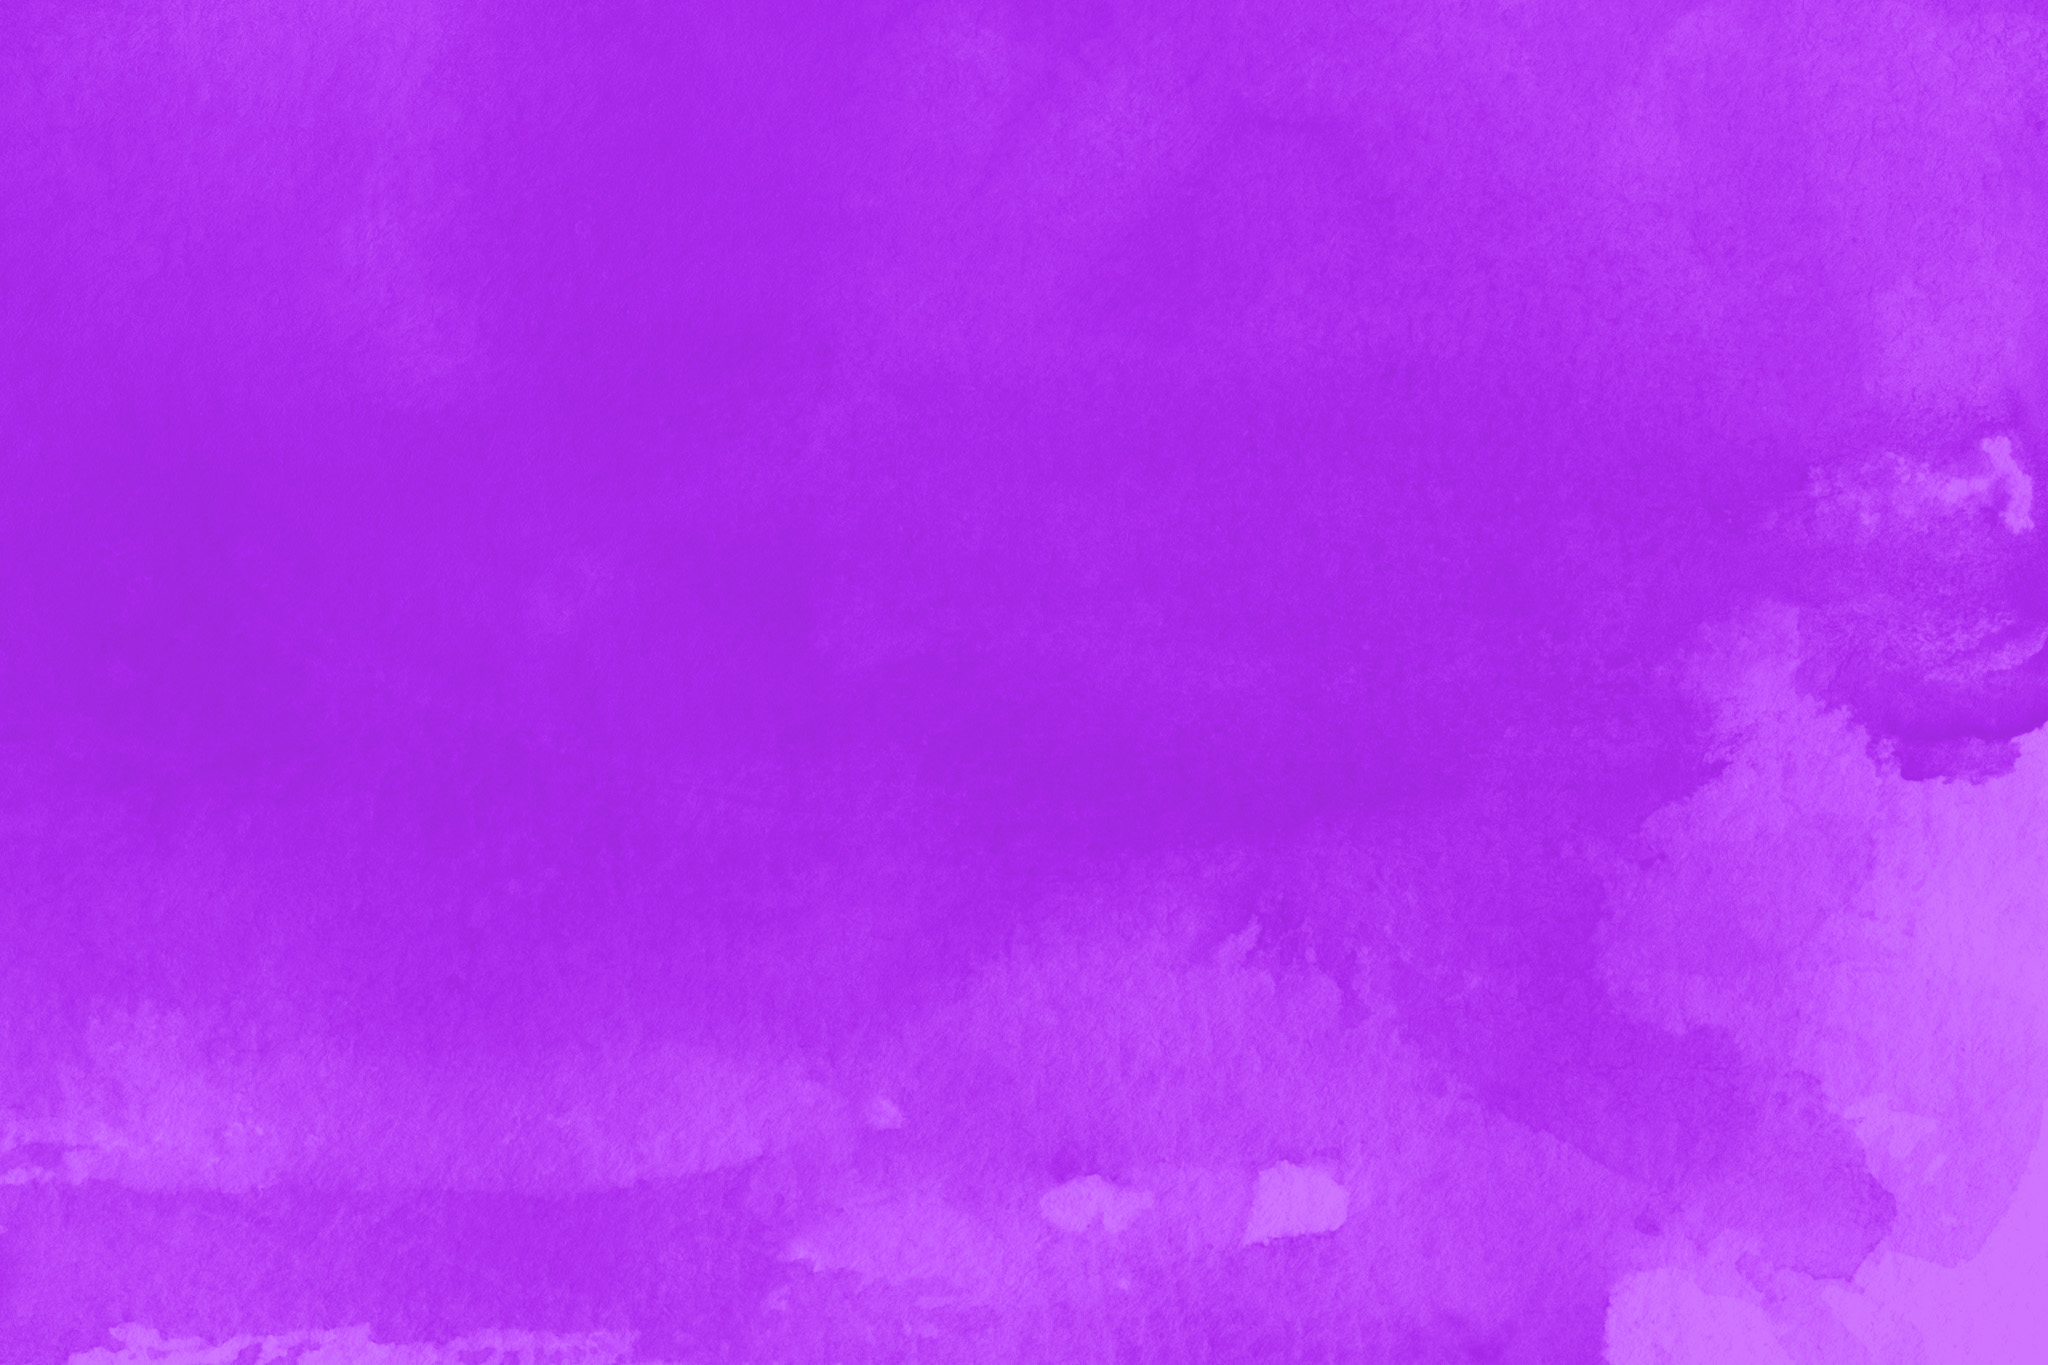 おしゃれな紫色のかっこいい壁紙 の画像素材を無料ダウンロード 1 フリー素材 Beiz Images